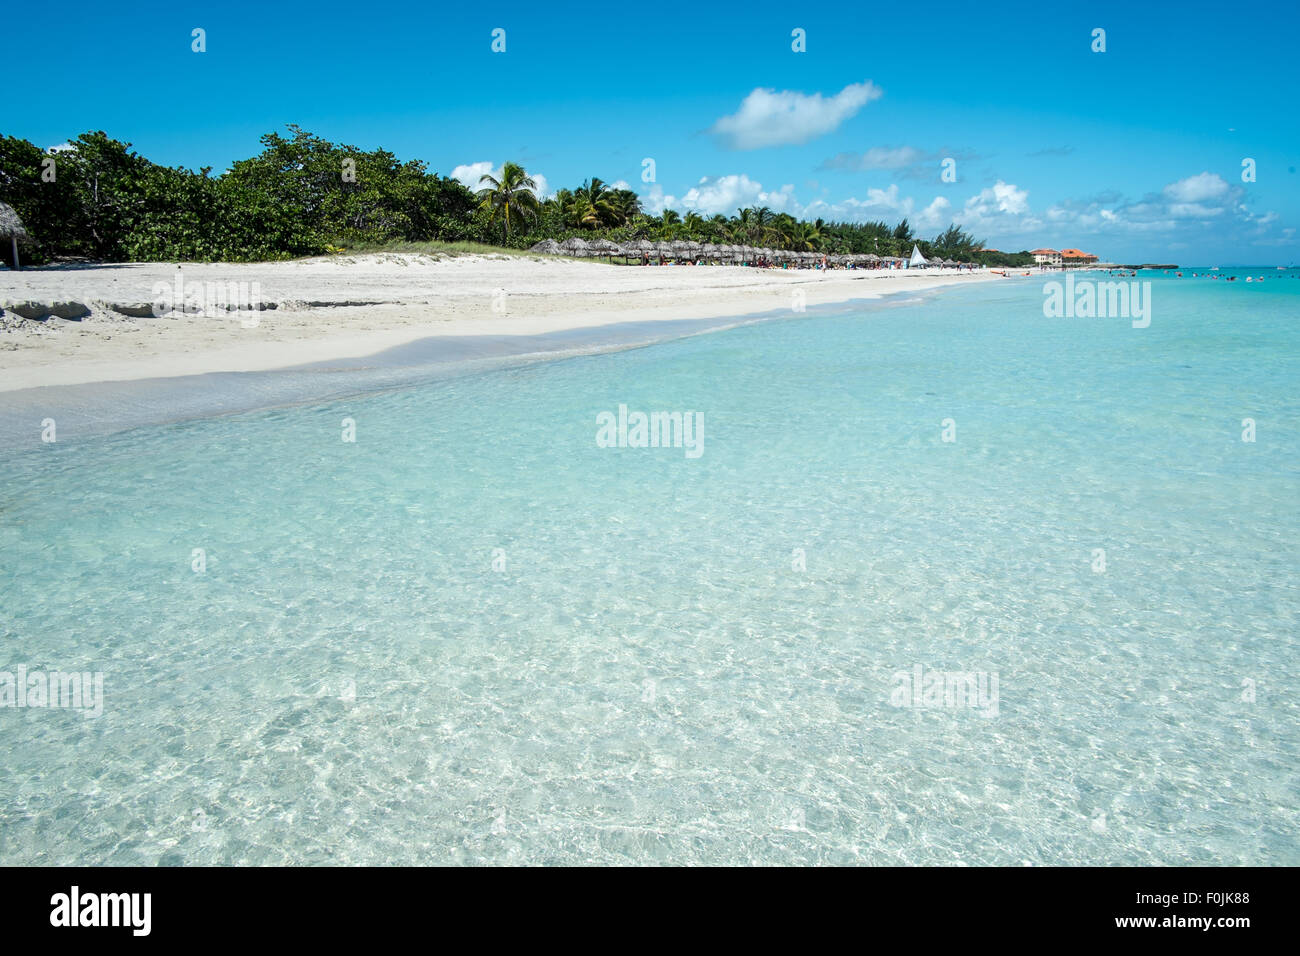 Die Varadero Resort in Kuba ist bekannt für seine tropische Strände mit weißem Sand und kristallklarem Meer. Stockfoto